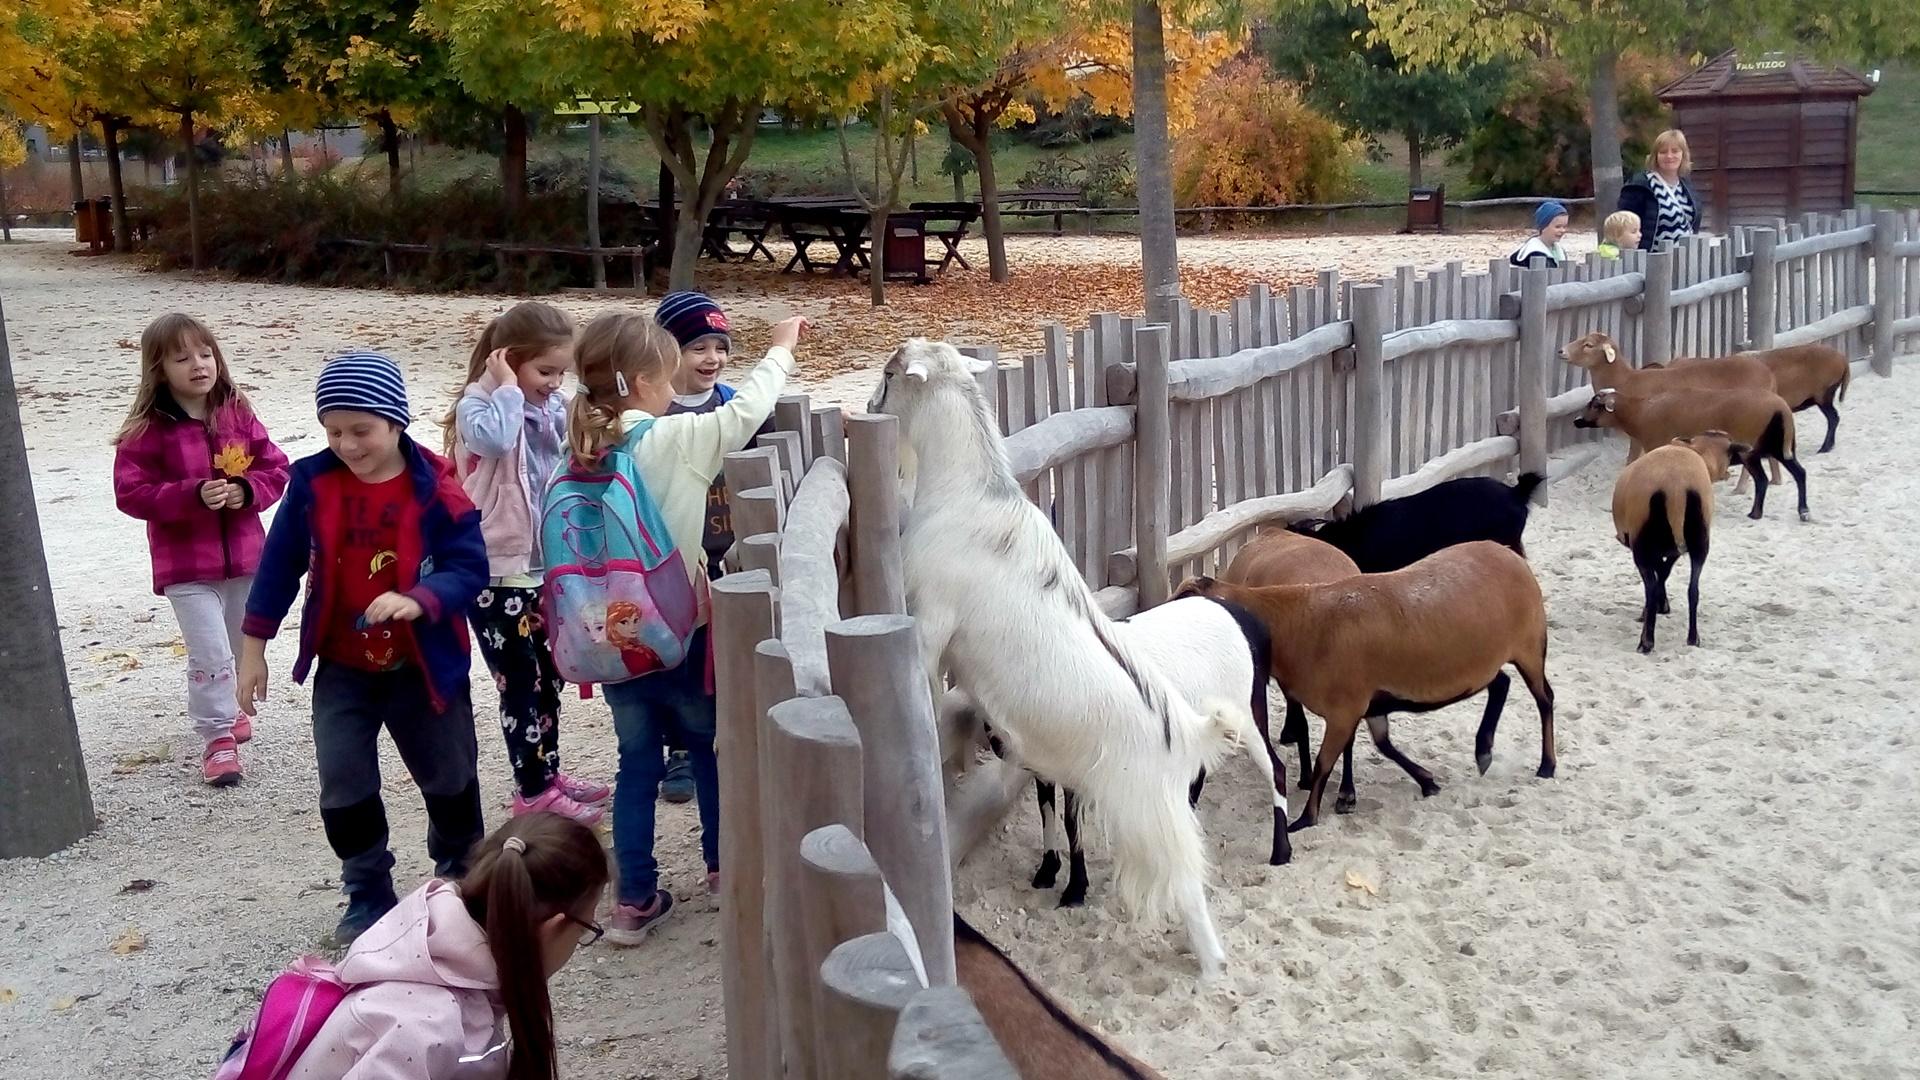 2019. októberében az Állatok világnapja alkalmából ismét ellátogatunk nagycsoportosainkkal a Veszprémi Állatkertbe. A kirándulást megelőzte a házi állatokkal való ismerkedés, hiszen ellátogattunk a faluban található állattartókhoz, pl.: lovakat, teheneket, tyúkokat, kecskéket megnézni. Sokat beszélgettünk az állatok gondozásáról, táplálkozásáról, életmódjáról, hasznáról. A témához kapcsolódóan mesékkel, dalokkal, mondókákkal ismerkedhettek meg a gyerekek.
Az állatokkal való ismerkedést az állatkerti séta kapcsán a vadállatokkal, illetve a nálunk nem élő állatokkal folytattuk októberben. 
A kirándulás alkalmával a gyerekeknek lehetőségük volt a már kihalt dinoszauruszokat is „megnézni” a dino parkban, „dino csontvázat” kereshettek közösen a homokban, és a kirándulás végén birtokba vehették a játszóteret is. 
